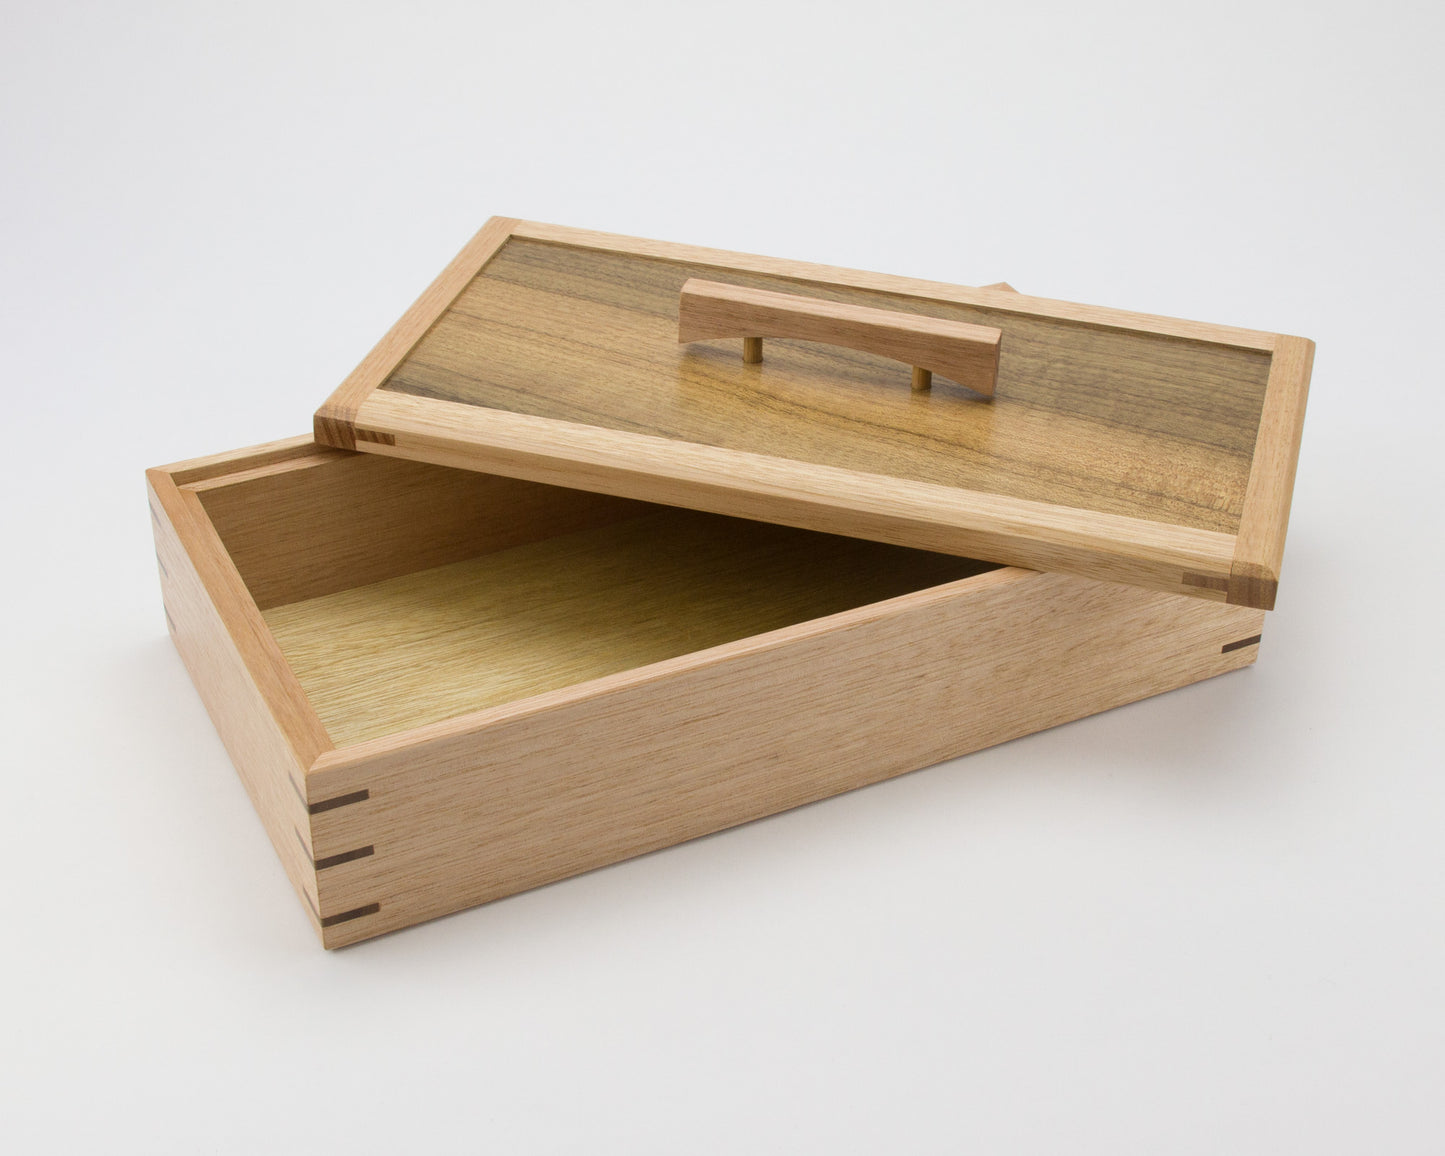 Wooden Keepsake Box handcrafted from Tasmanian Oak & Queensland Walnut